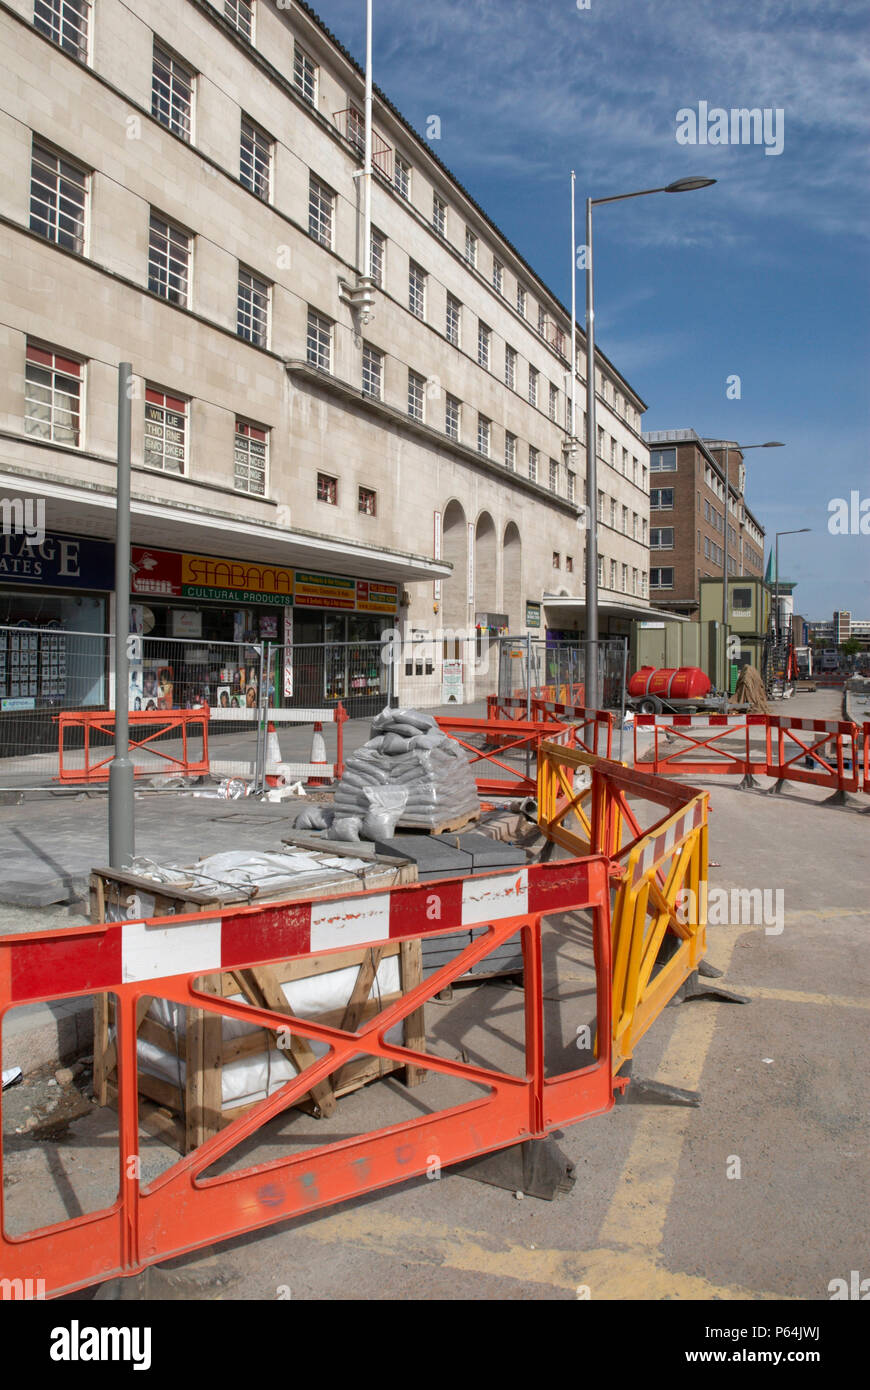 Re-développement de la rue à Leicester pour faciliter l'accès piétonnier, Leicester, UK Banque D'Images